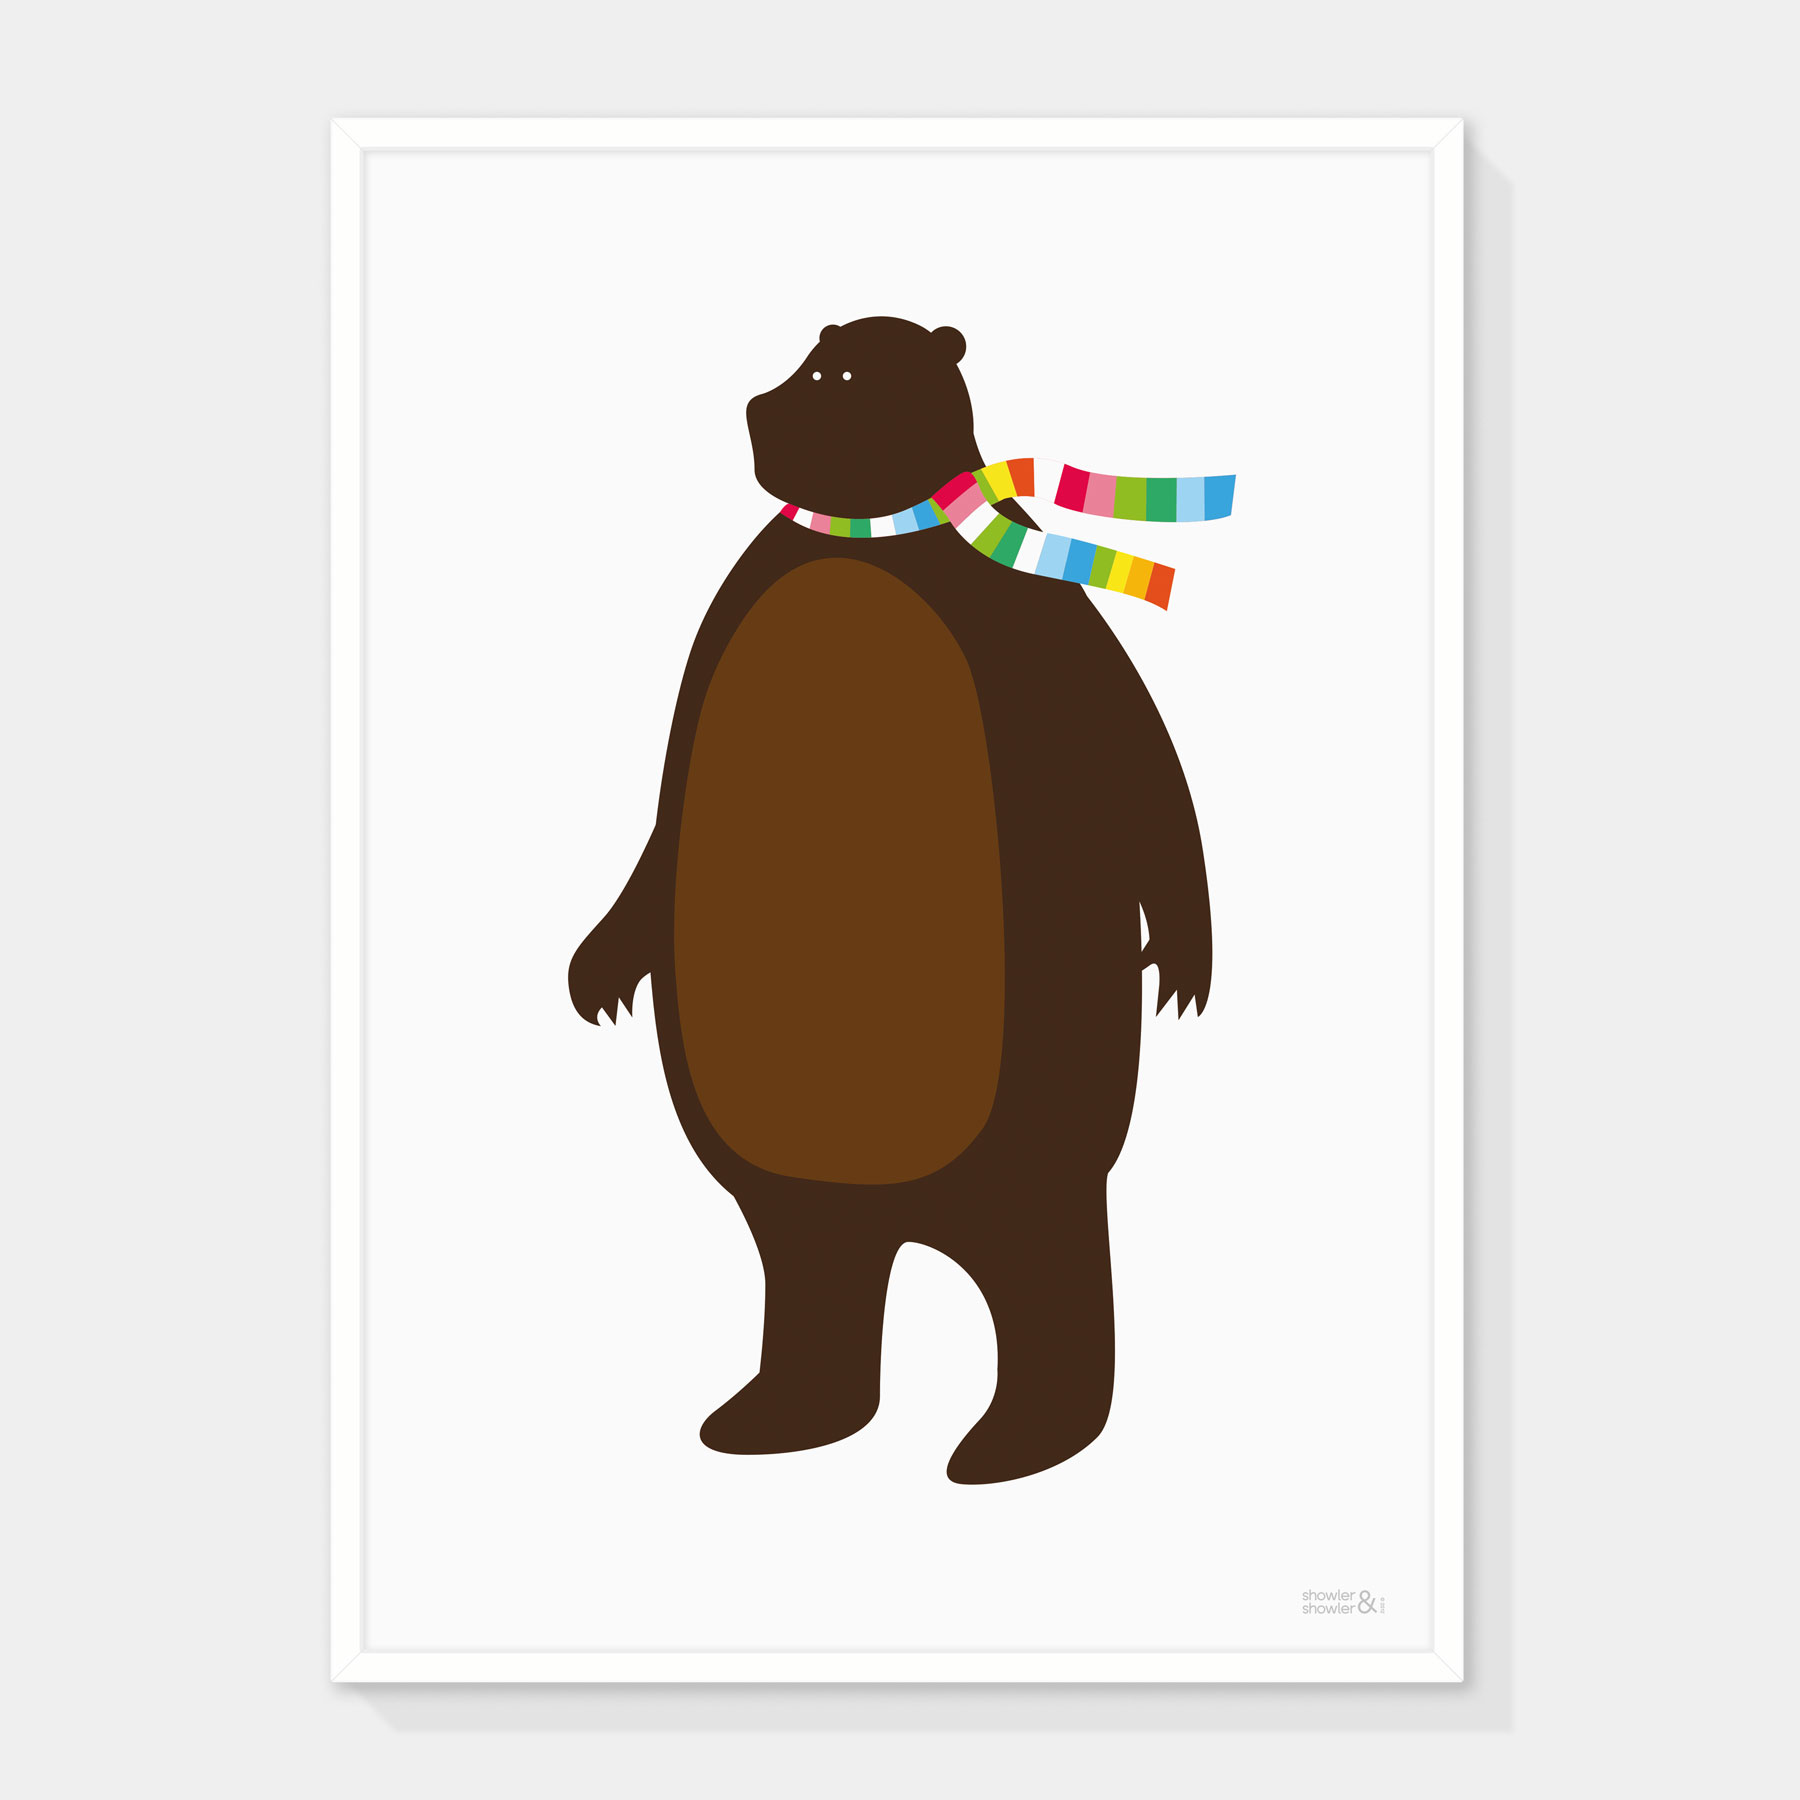 Mr-Bear-Framed.jpg